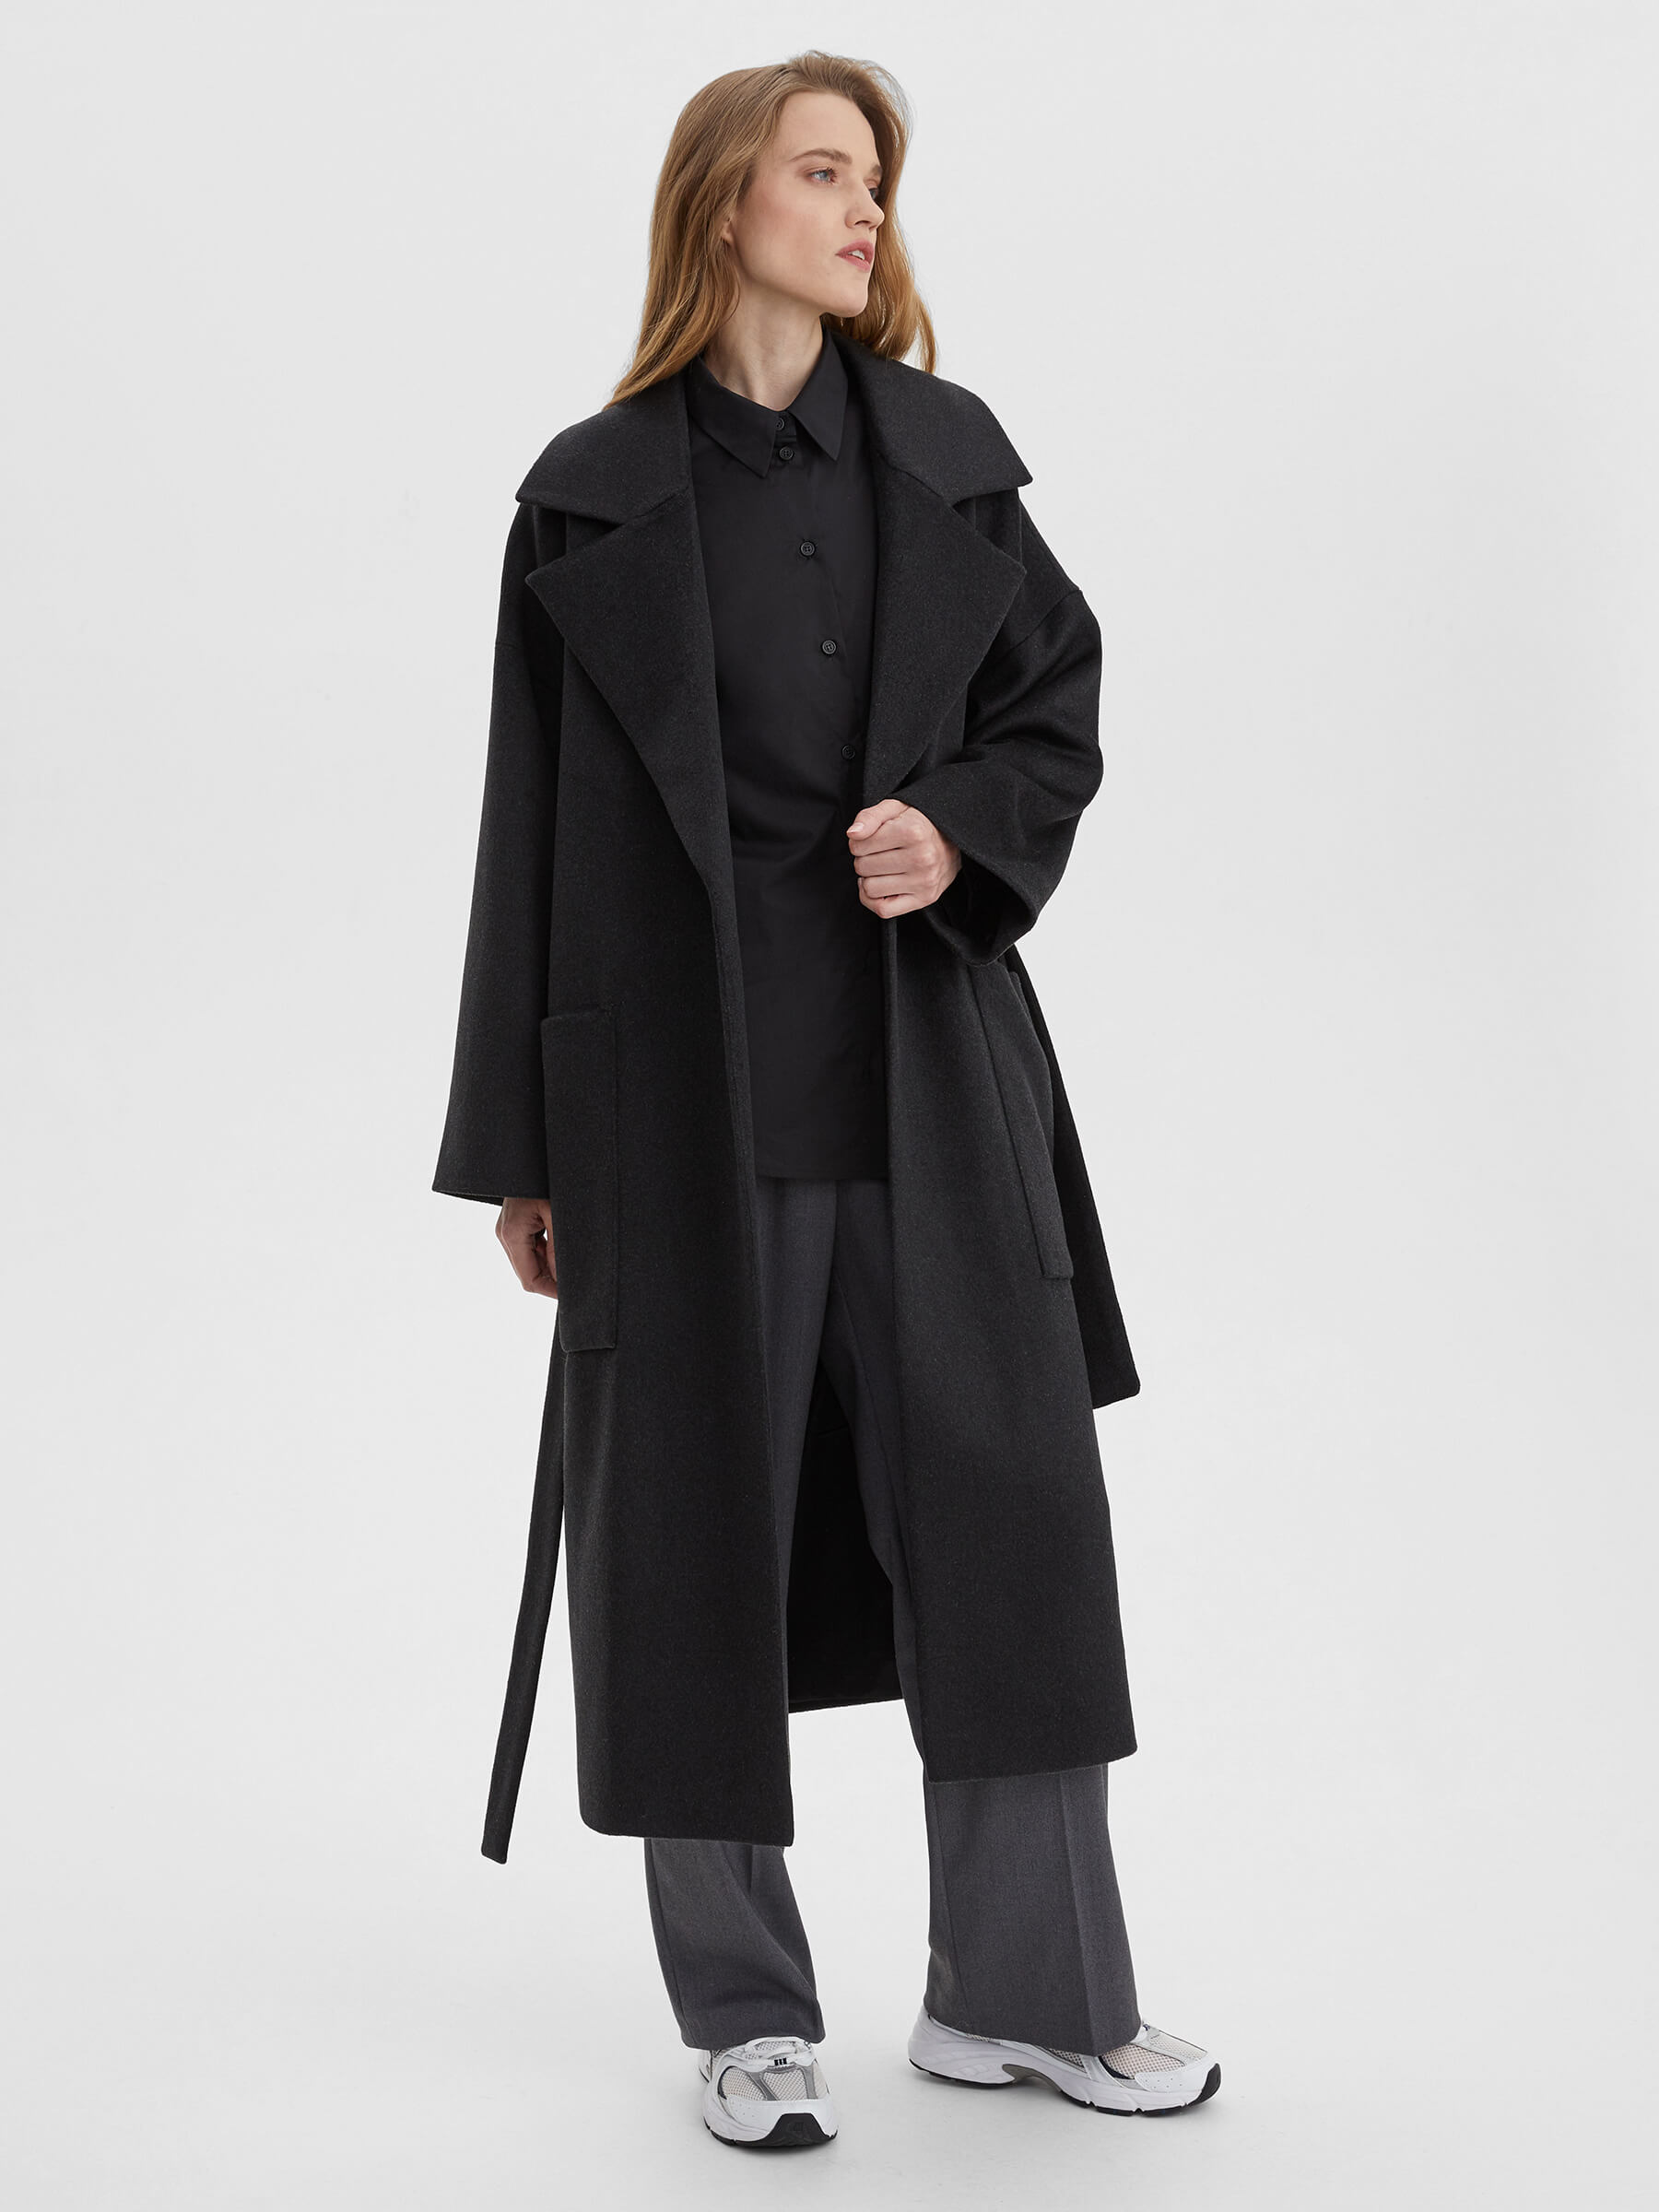 женское хлопковое пальто с большим меховым воротником свободного покроя средней длины m289 Пальто женское длинное с объемными карманами и поясом, цвет – антрацит